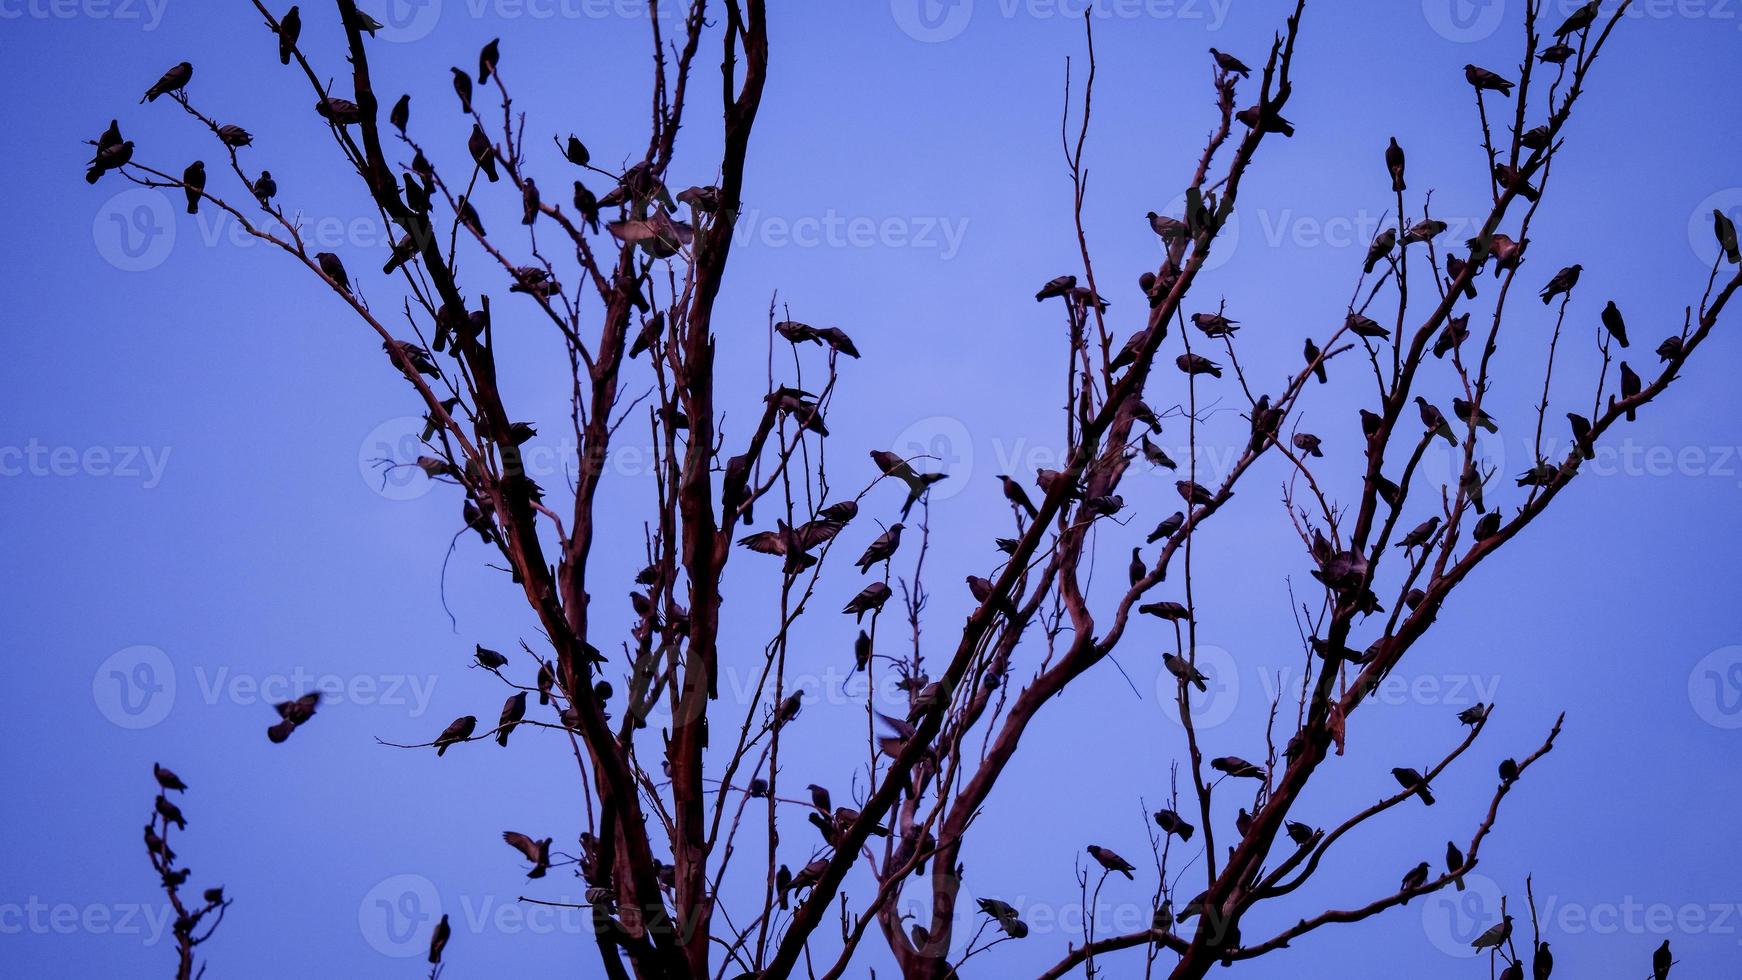 uma Corvo do pombos e corvos em uma árvore ramo foto